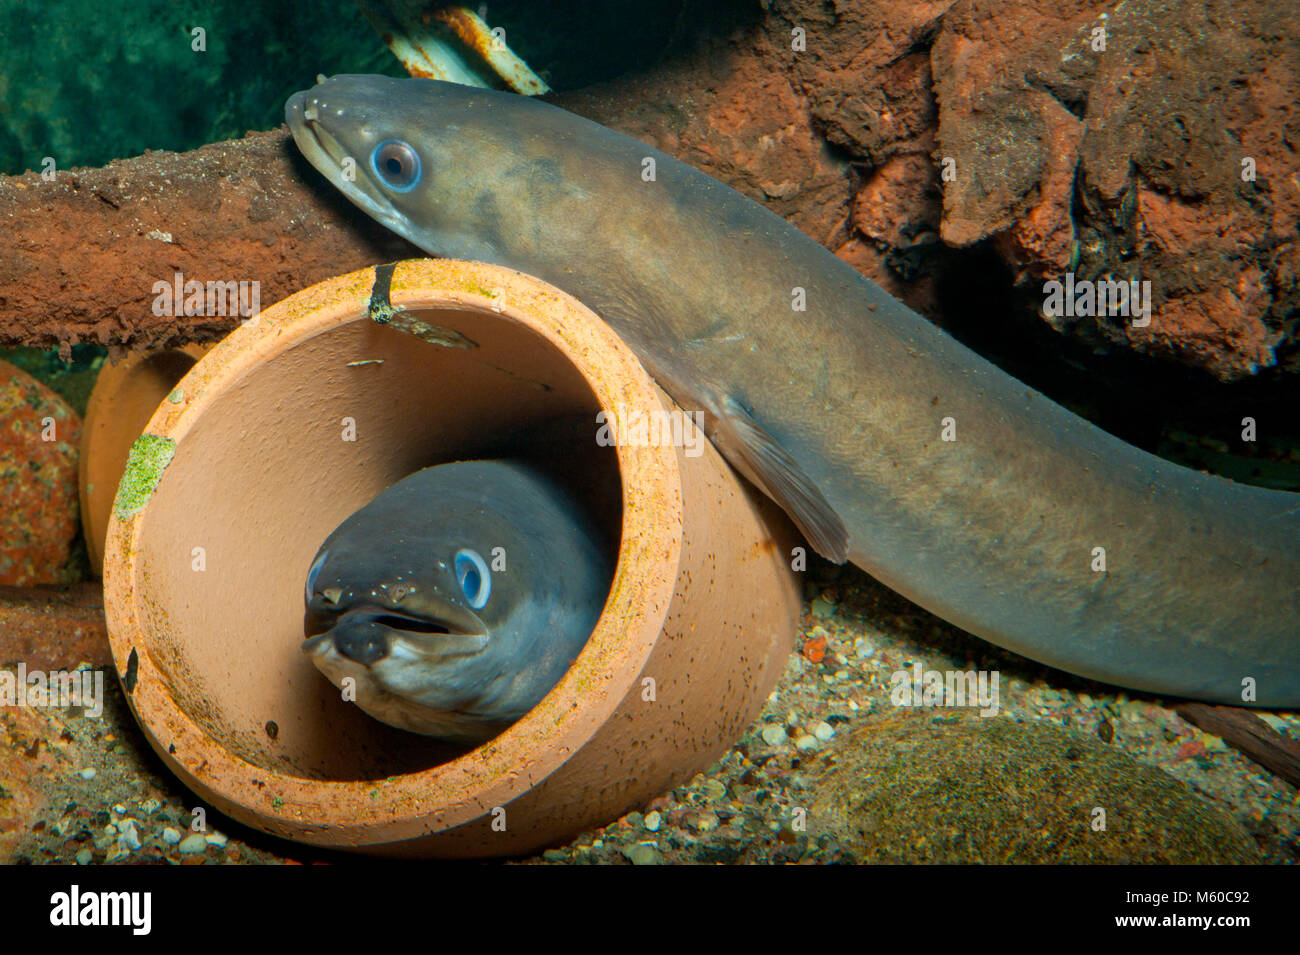 L'anguille européenne (Anguilla anguilla). Deux individus dans et à côté des canalisations sur la rivière-de-chaussée. Allemagne Banque D'Images